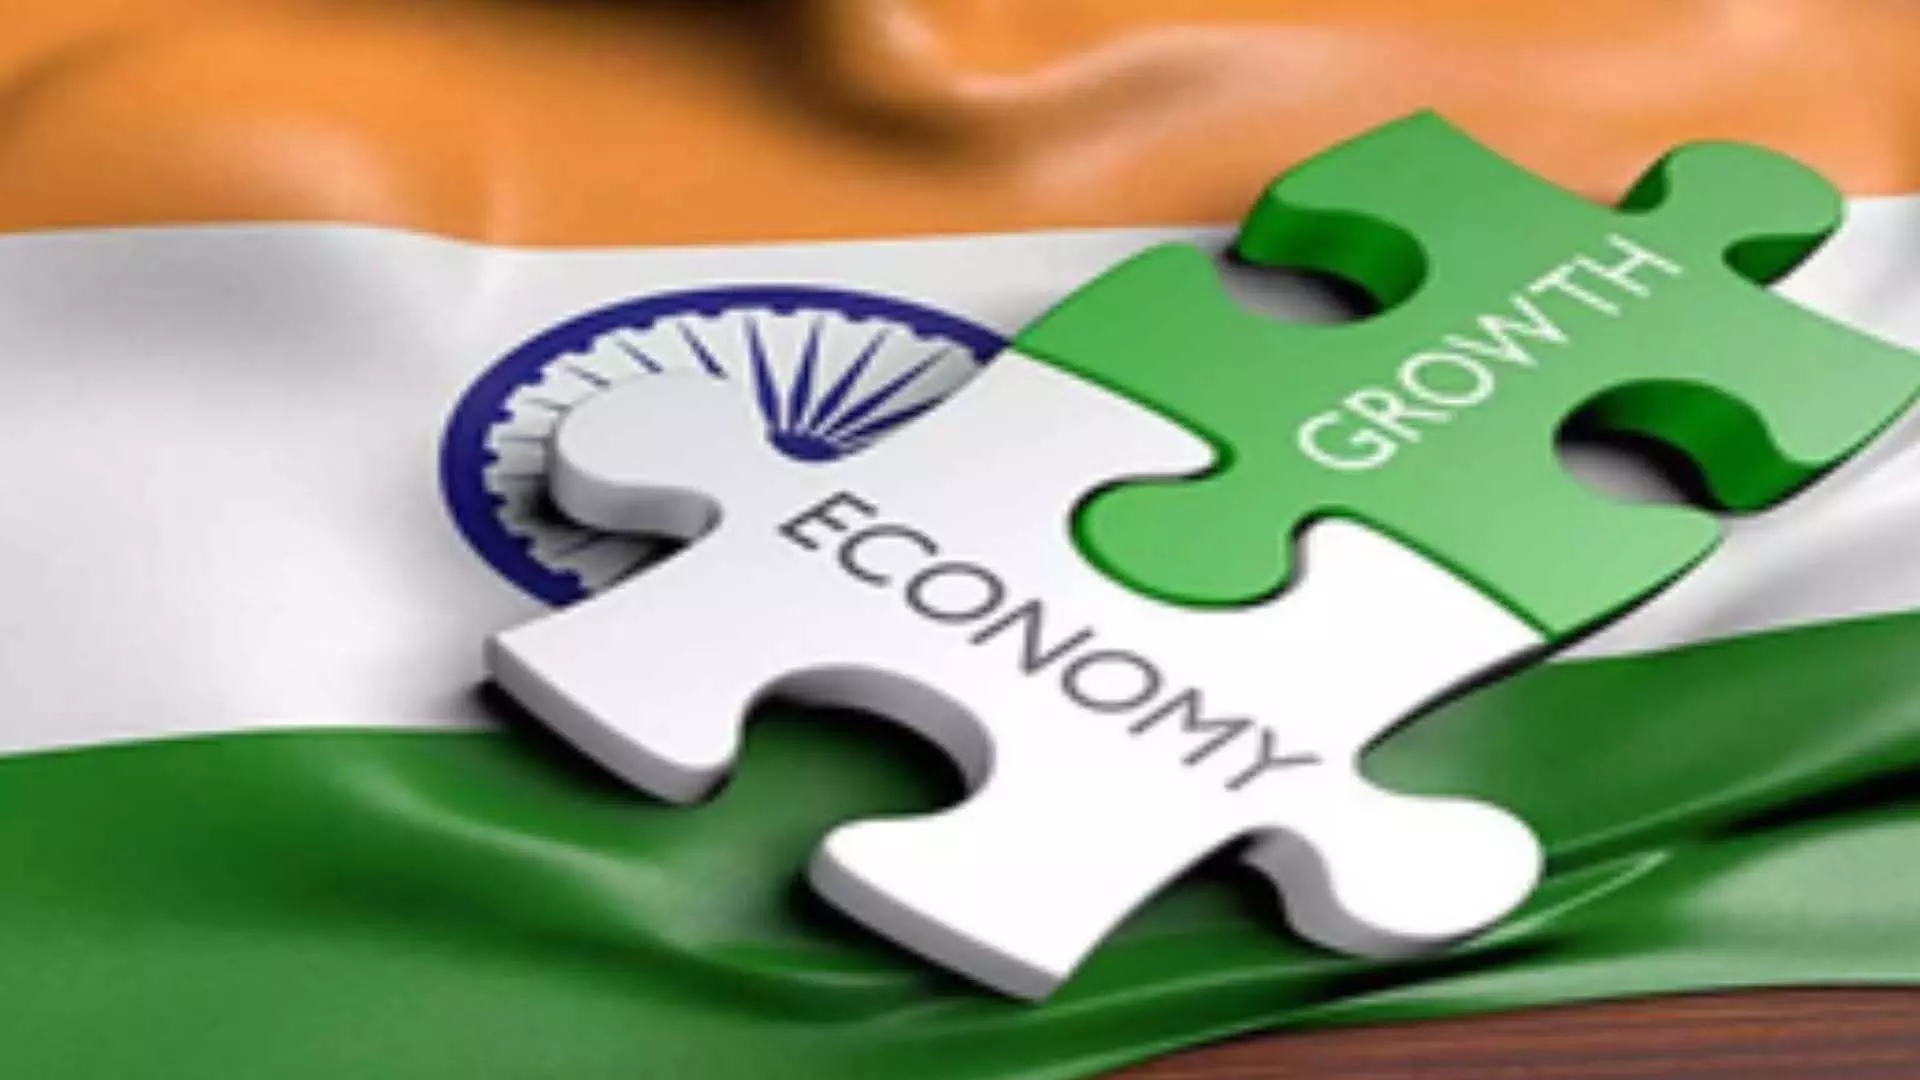 भारत की अर्थव्यवस्था 7-7.2% की दर से बढ़ने की संभावना: Deloitte